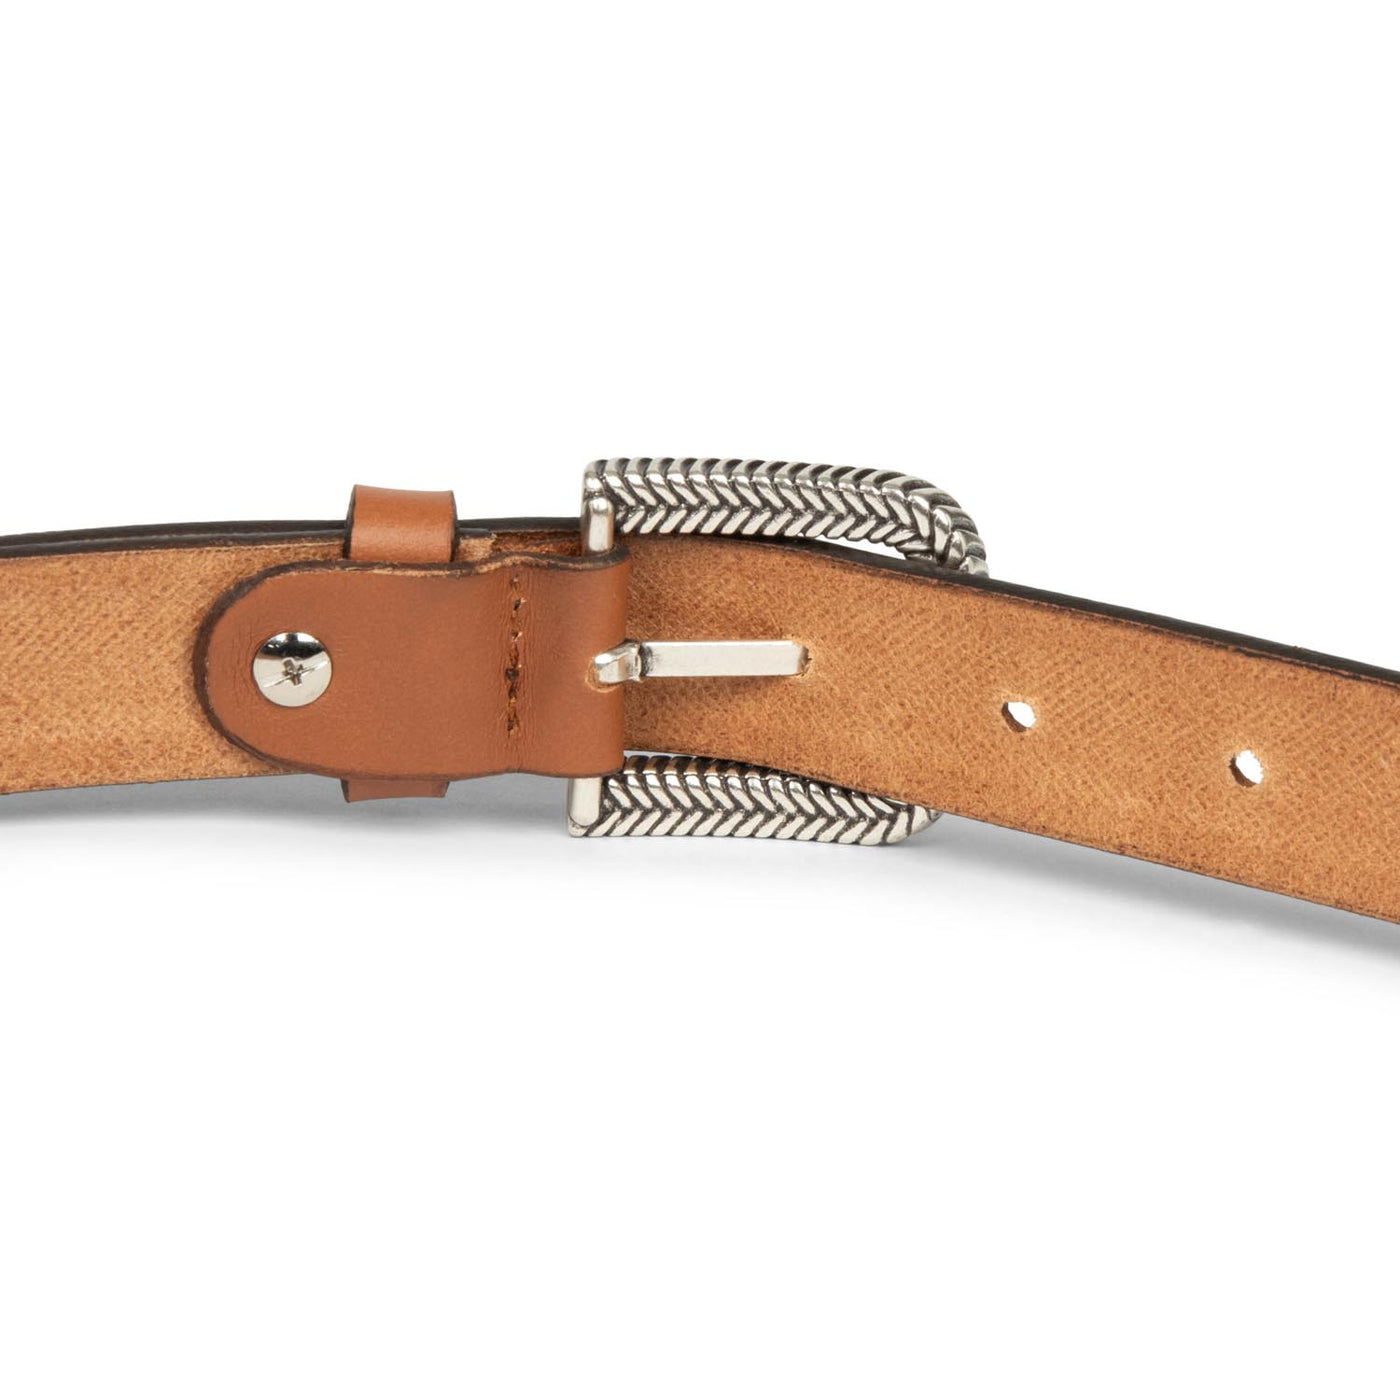 belt - ceinture cuir végétal femme #couleur_cognac